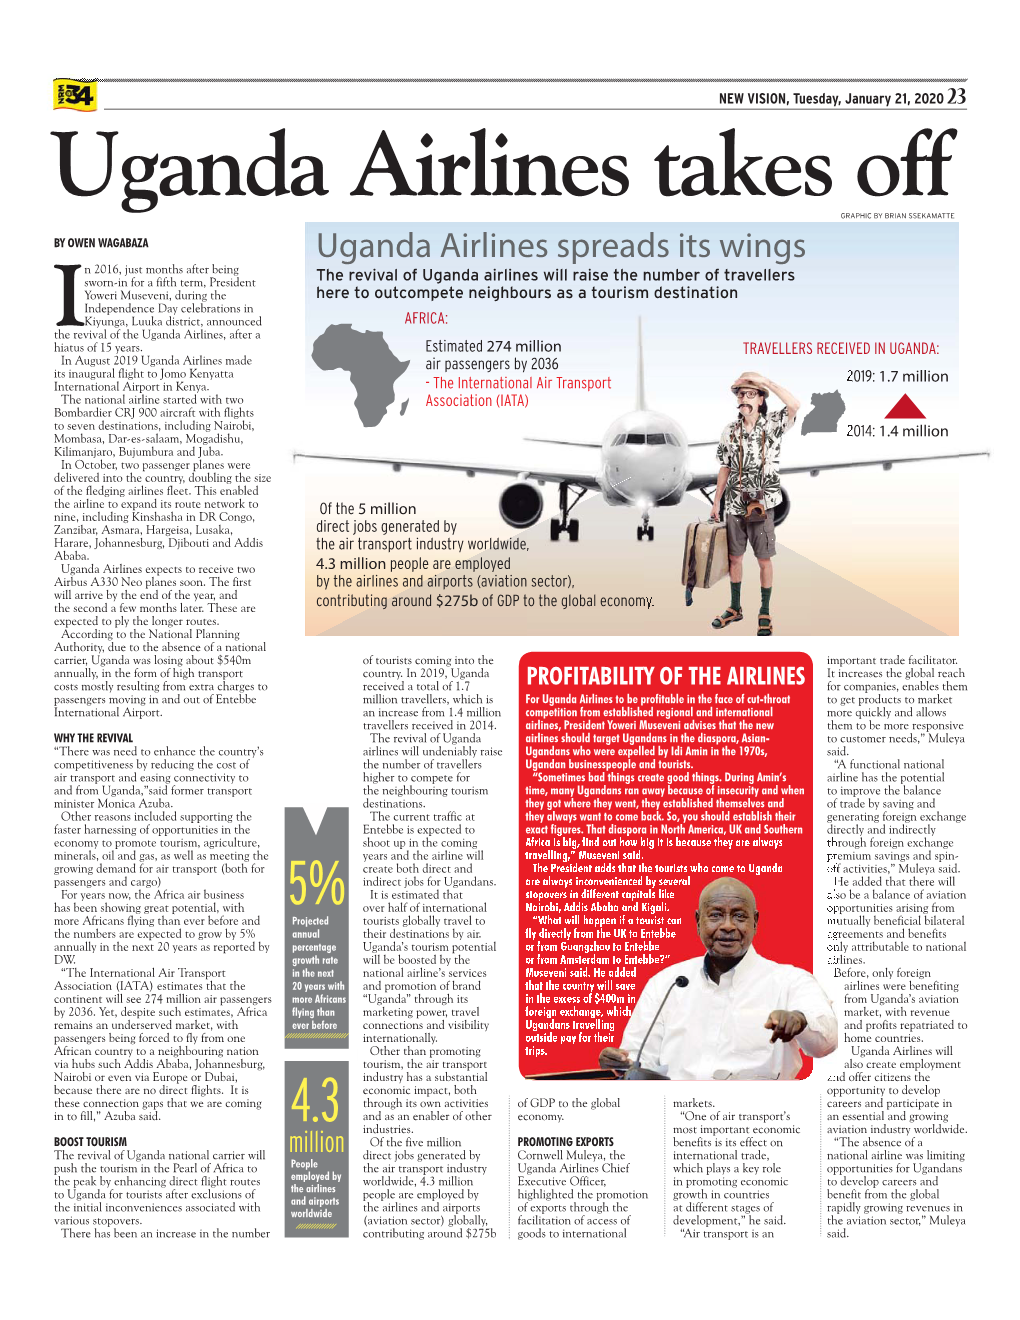 Uganda Airlines.Indd